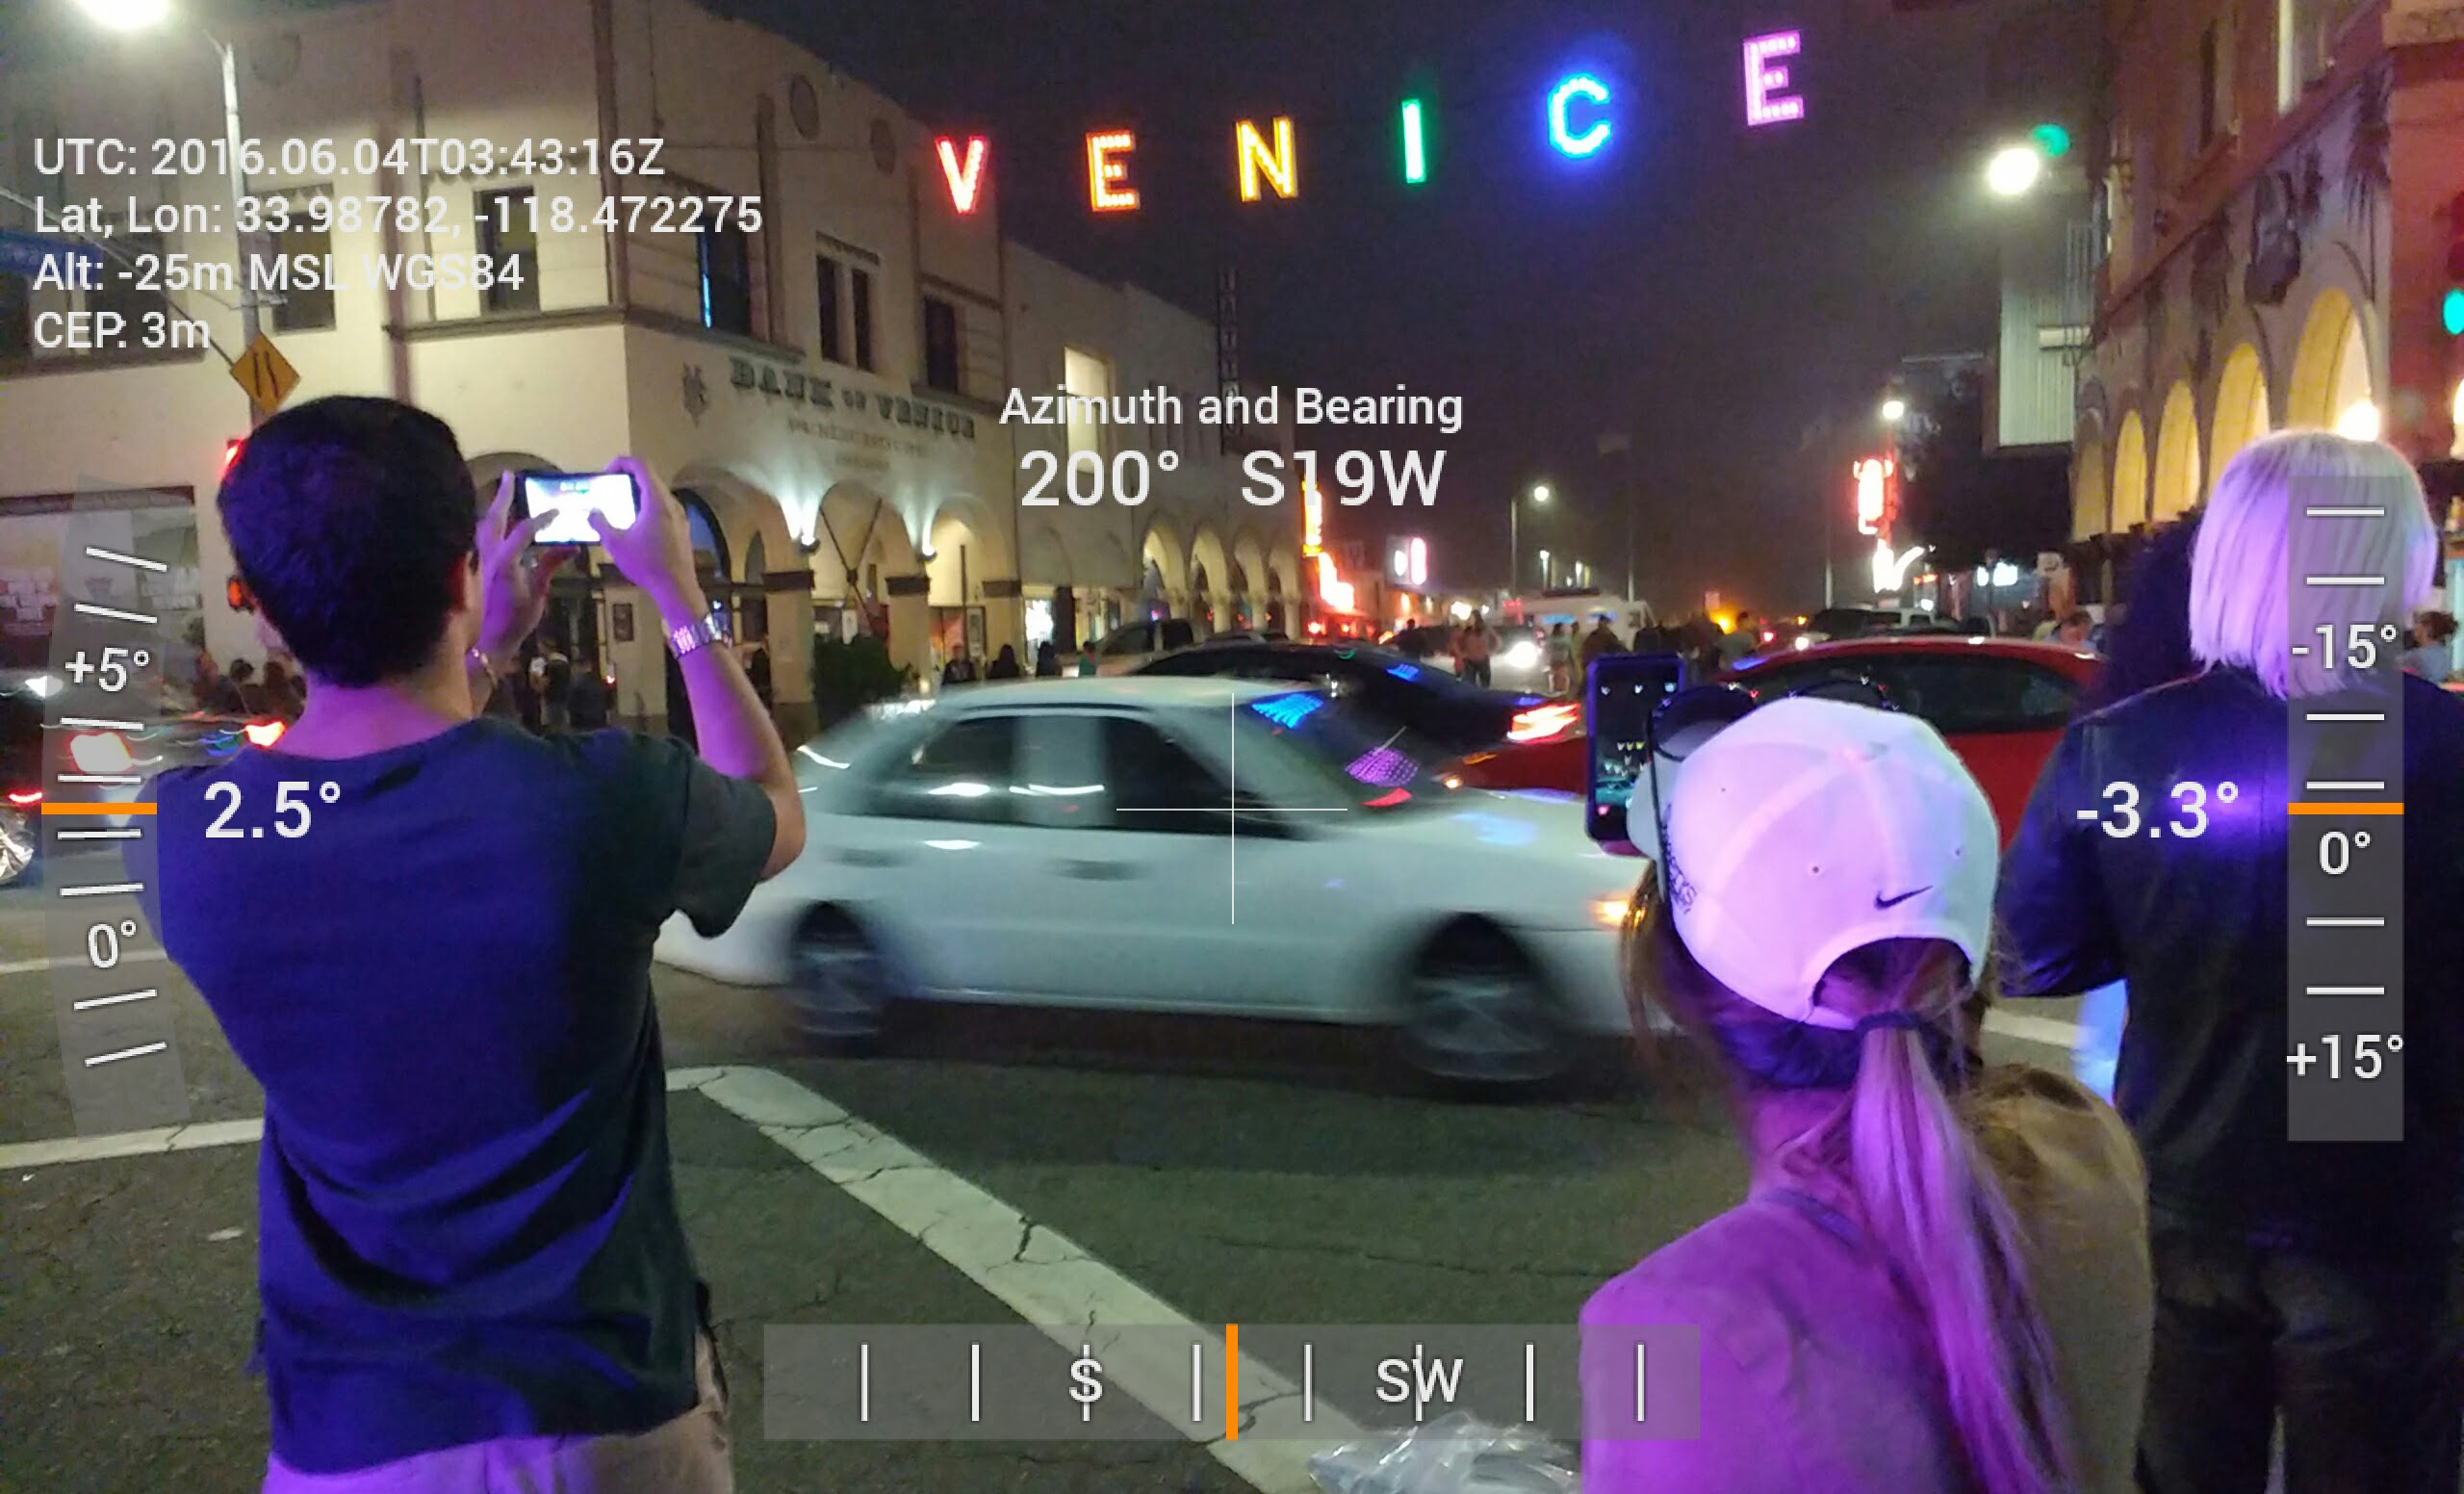 Location data for the Venice Pride event on the corner of Windward Avenue & Pacific Avenue in Venice Beach, California